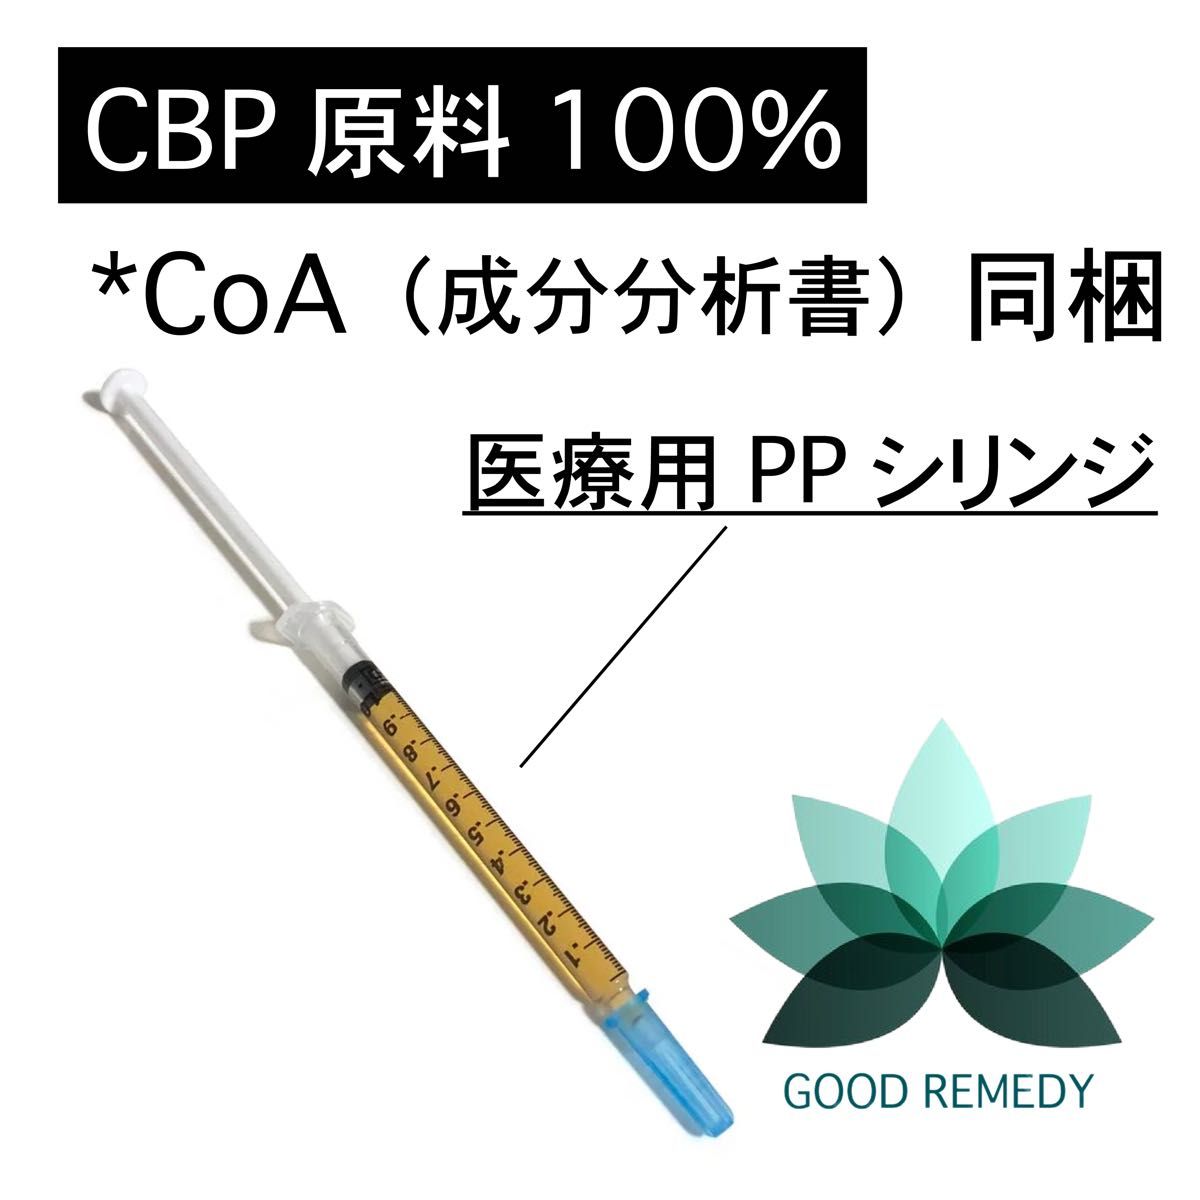 【CBP原料100% 】CBP純度 98.83% (CoA証明書有)内容量 :1g包装方法: 医療用PPシリンジ